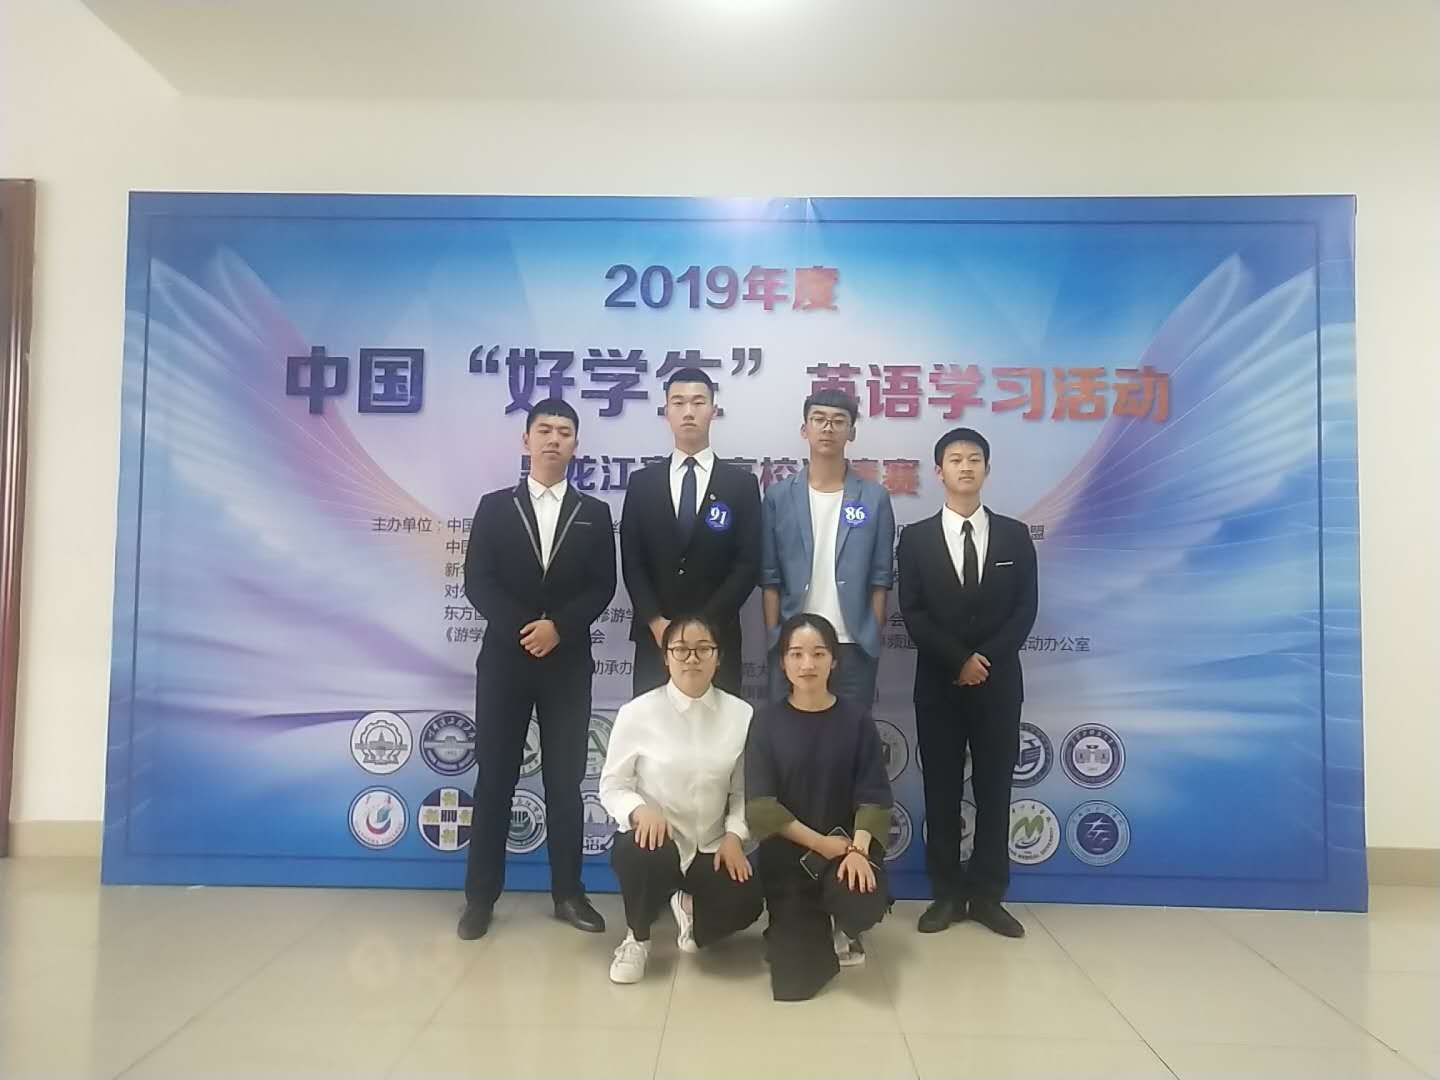 英语专业 英语18级学生石菲菲参加2019届中国好学生比赛